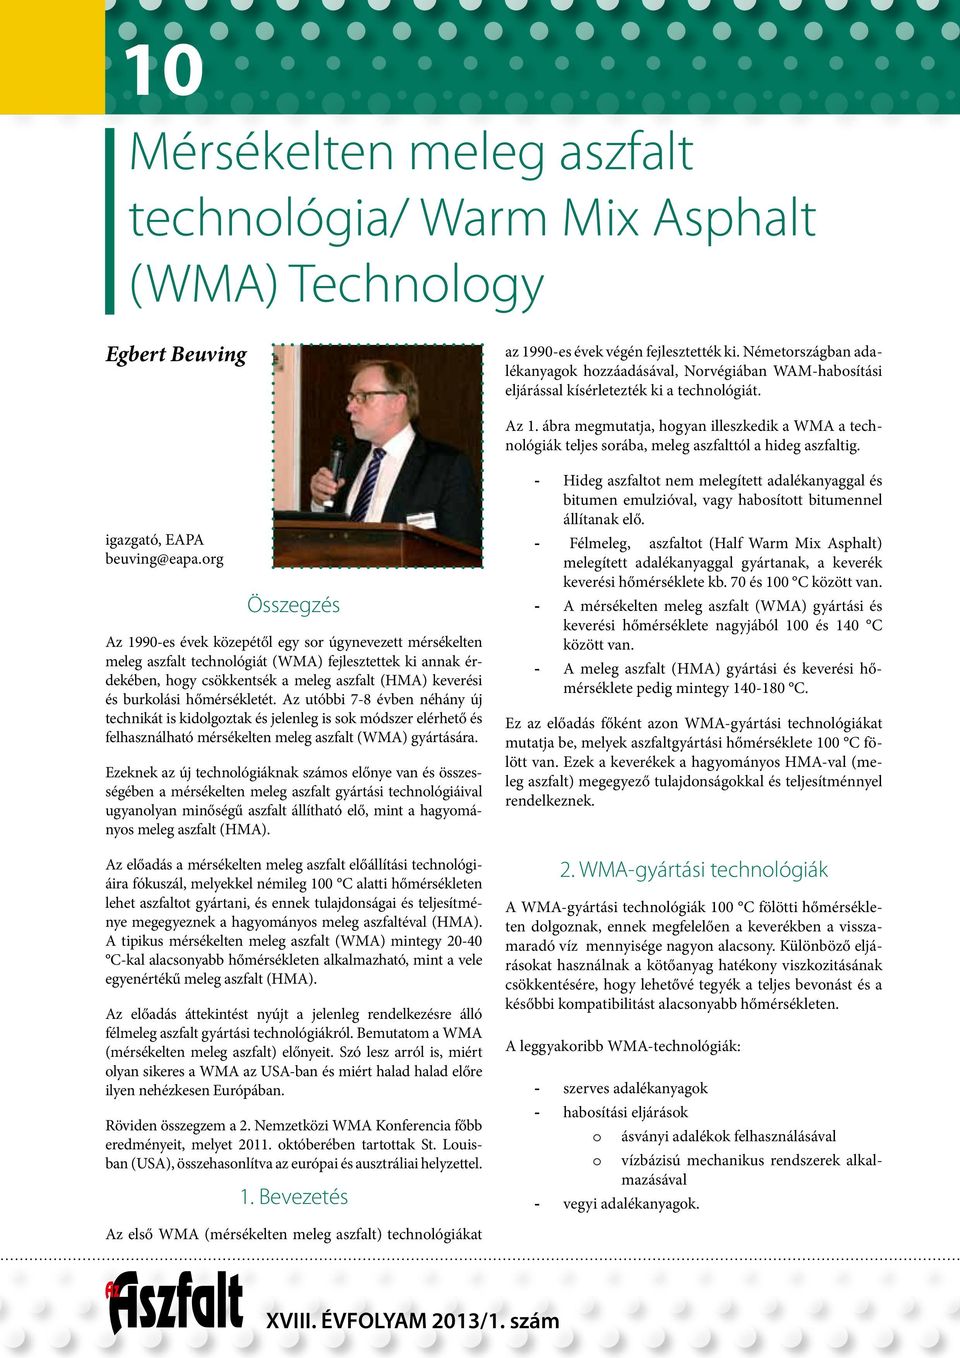 ábra megmutatja, hogyan illeszkedik a WMA a technológiák teljes sorába, meleg aszfalttól a hideg aszfaltig. igazgató, EAPA beuving@eapa.